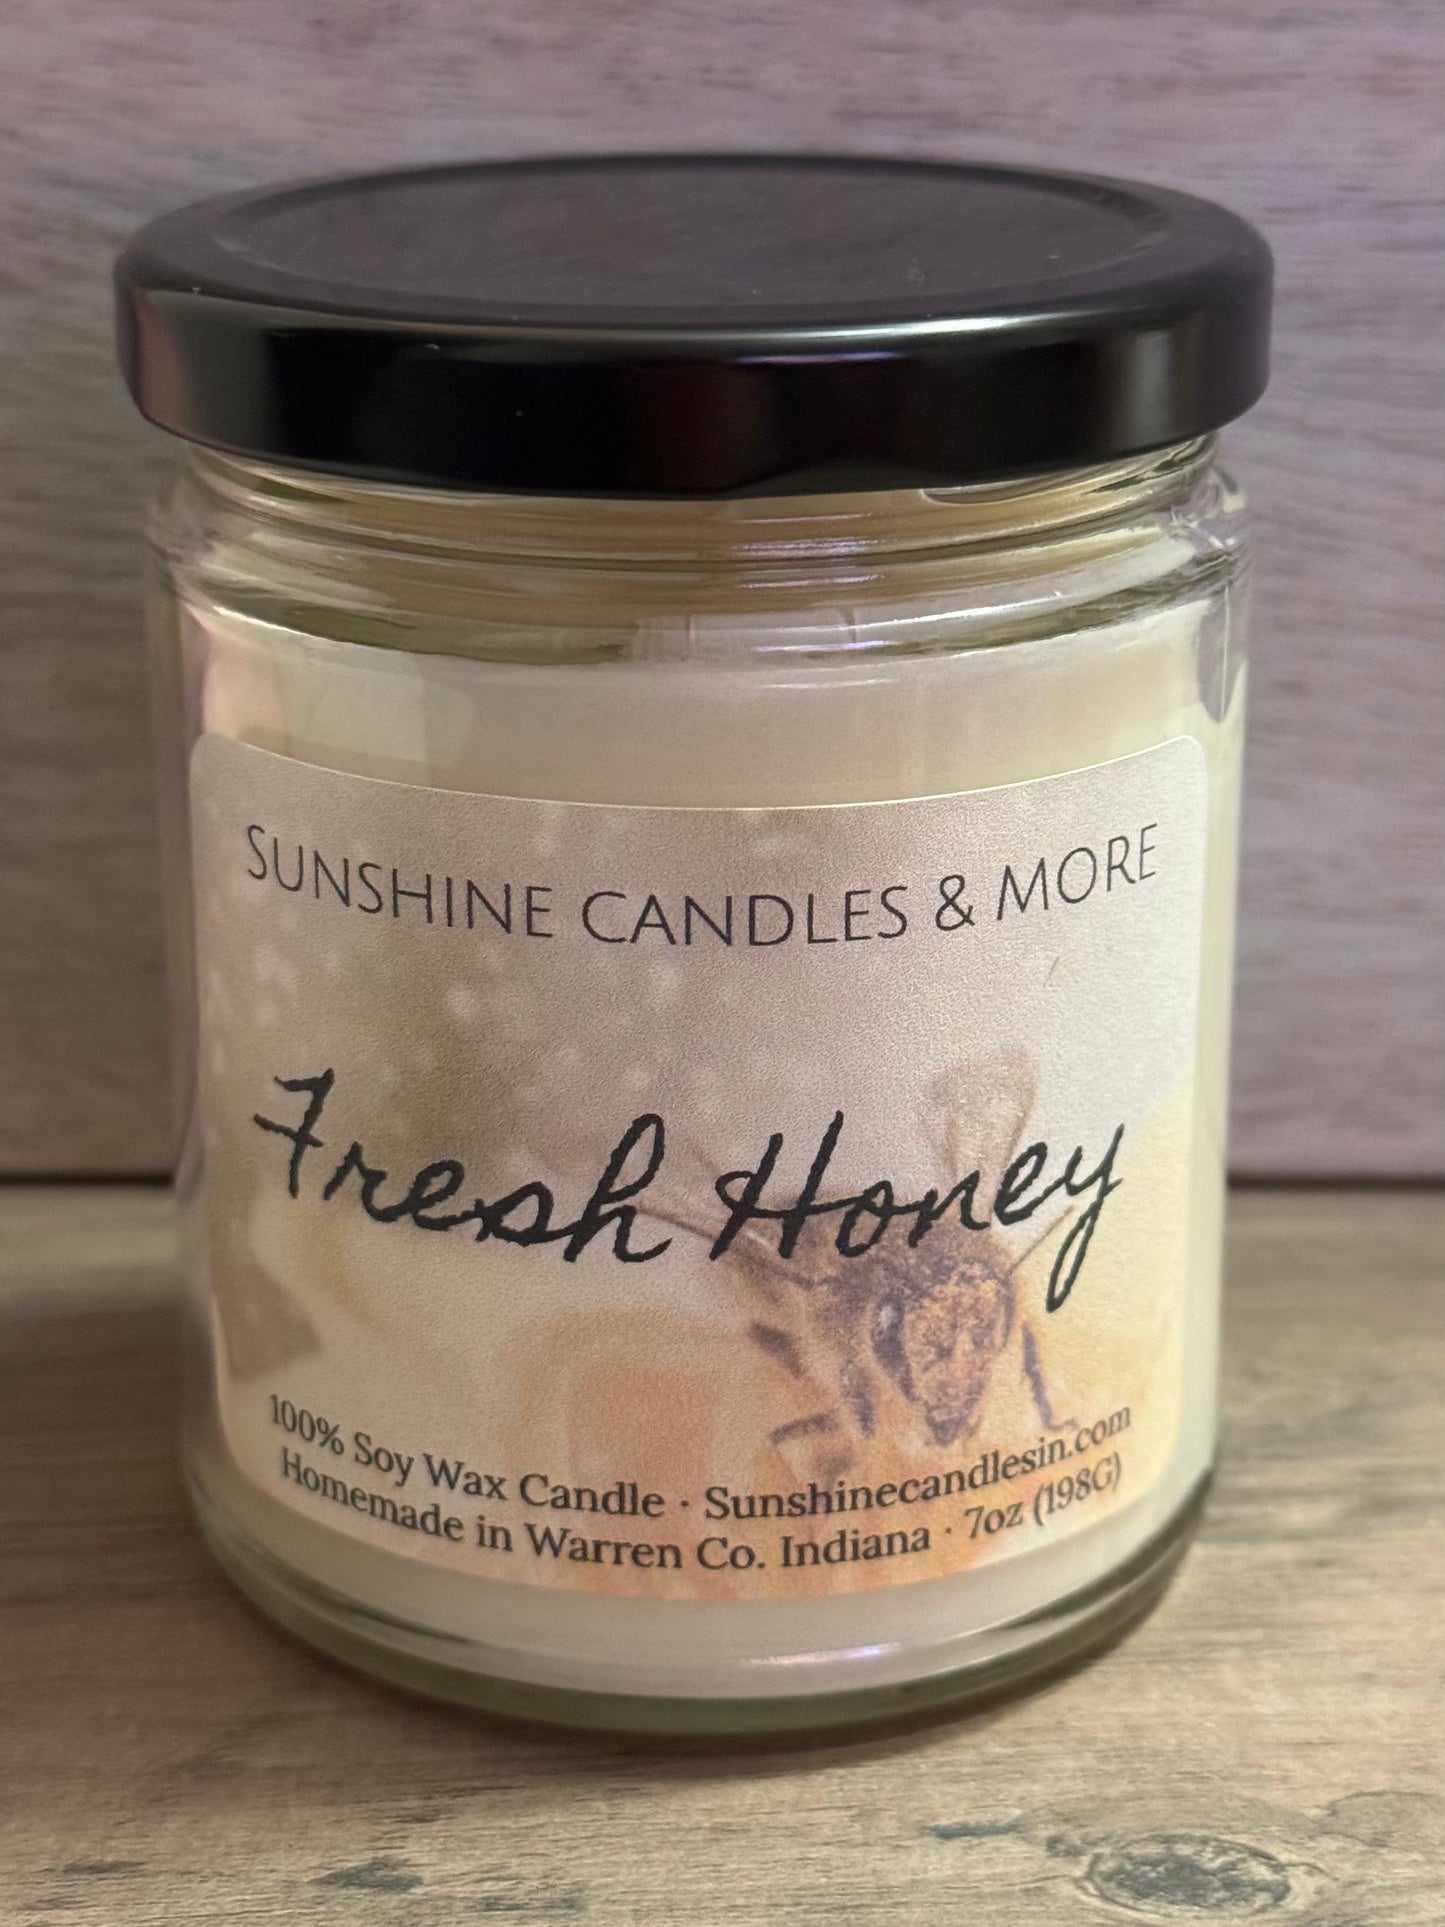 Fresh Honey Candle 7oz